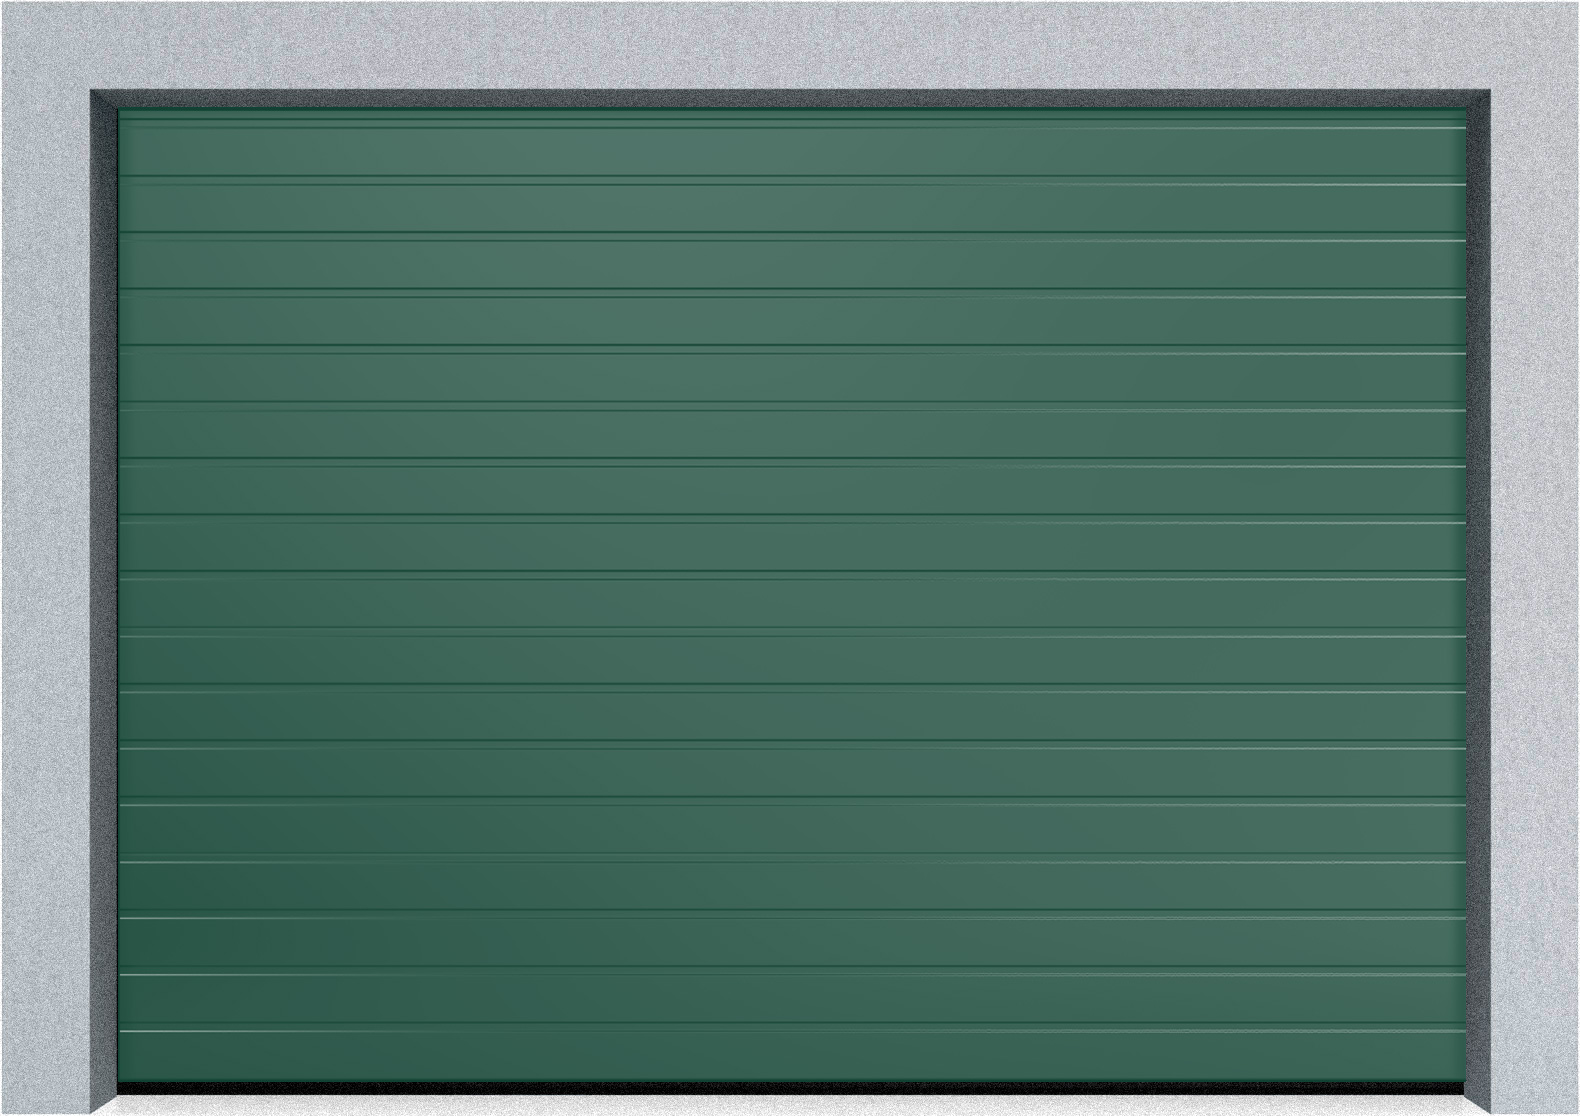  Автоматические Секционные гаражные ворота Hormann LTE 42 1500х2625 S-гофр, Микроволна стандартные цвета, фото 3 